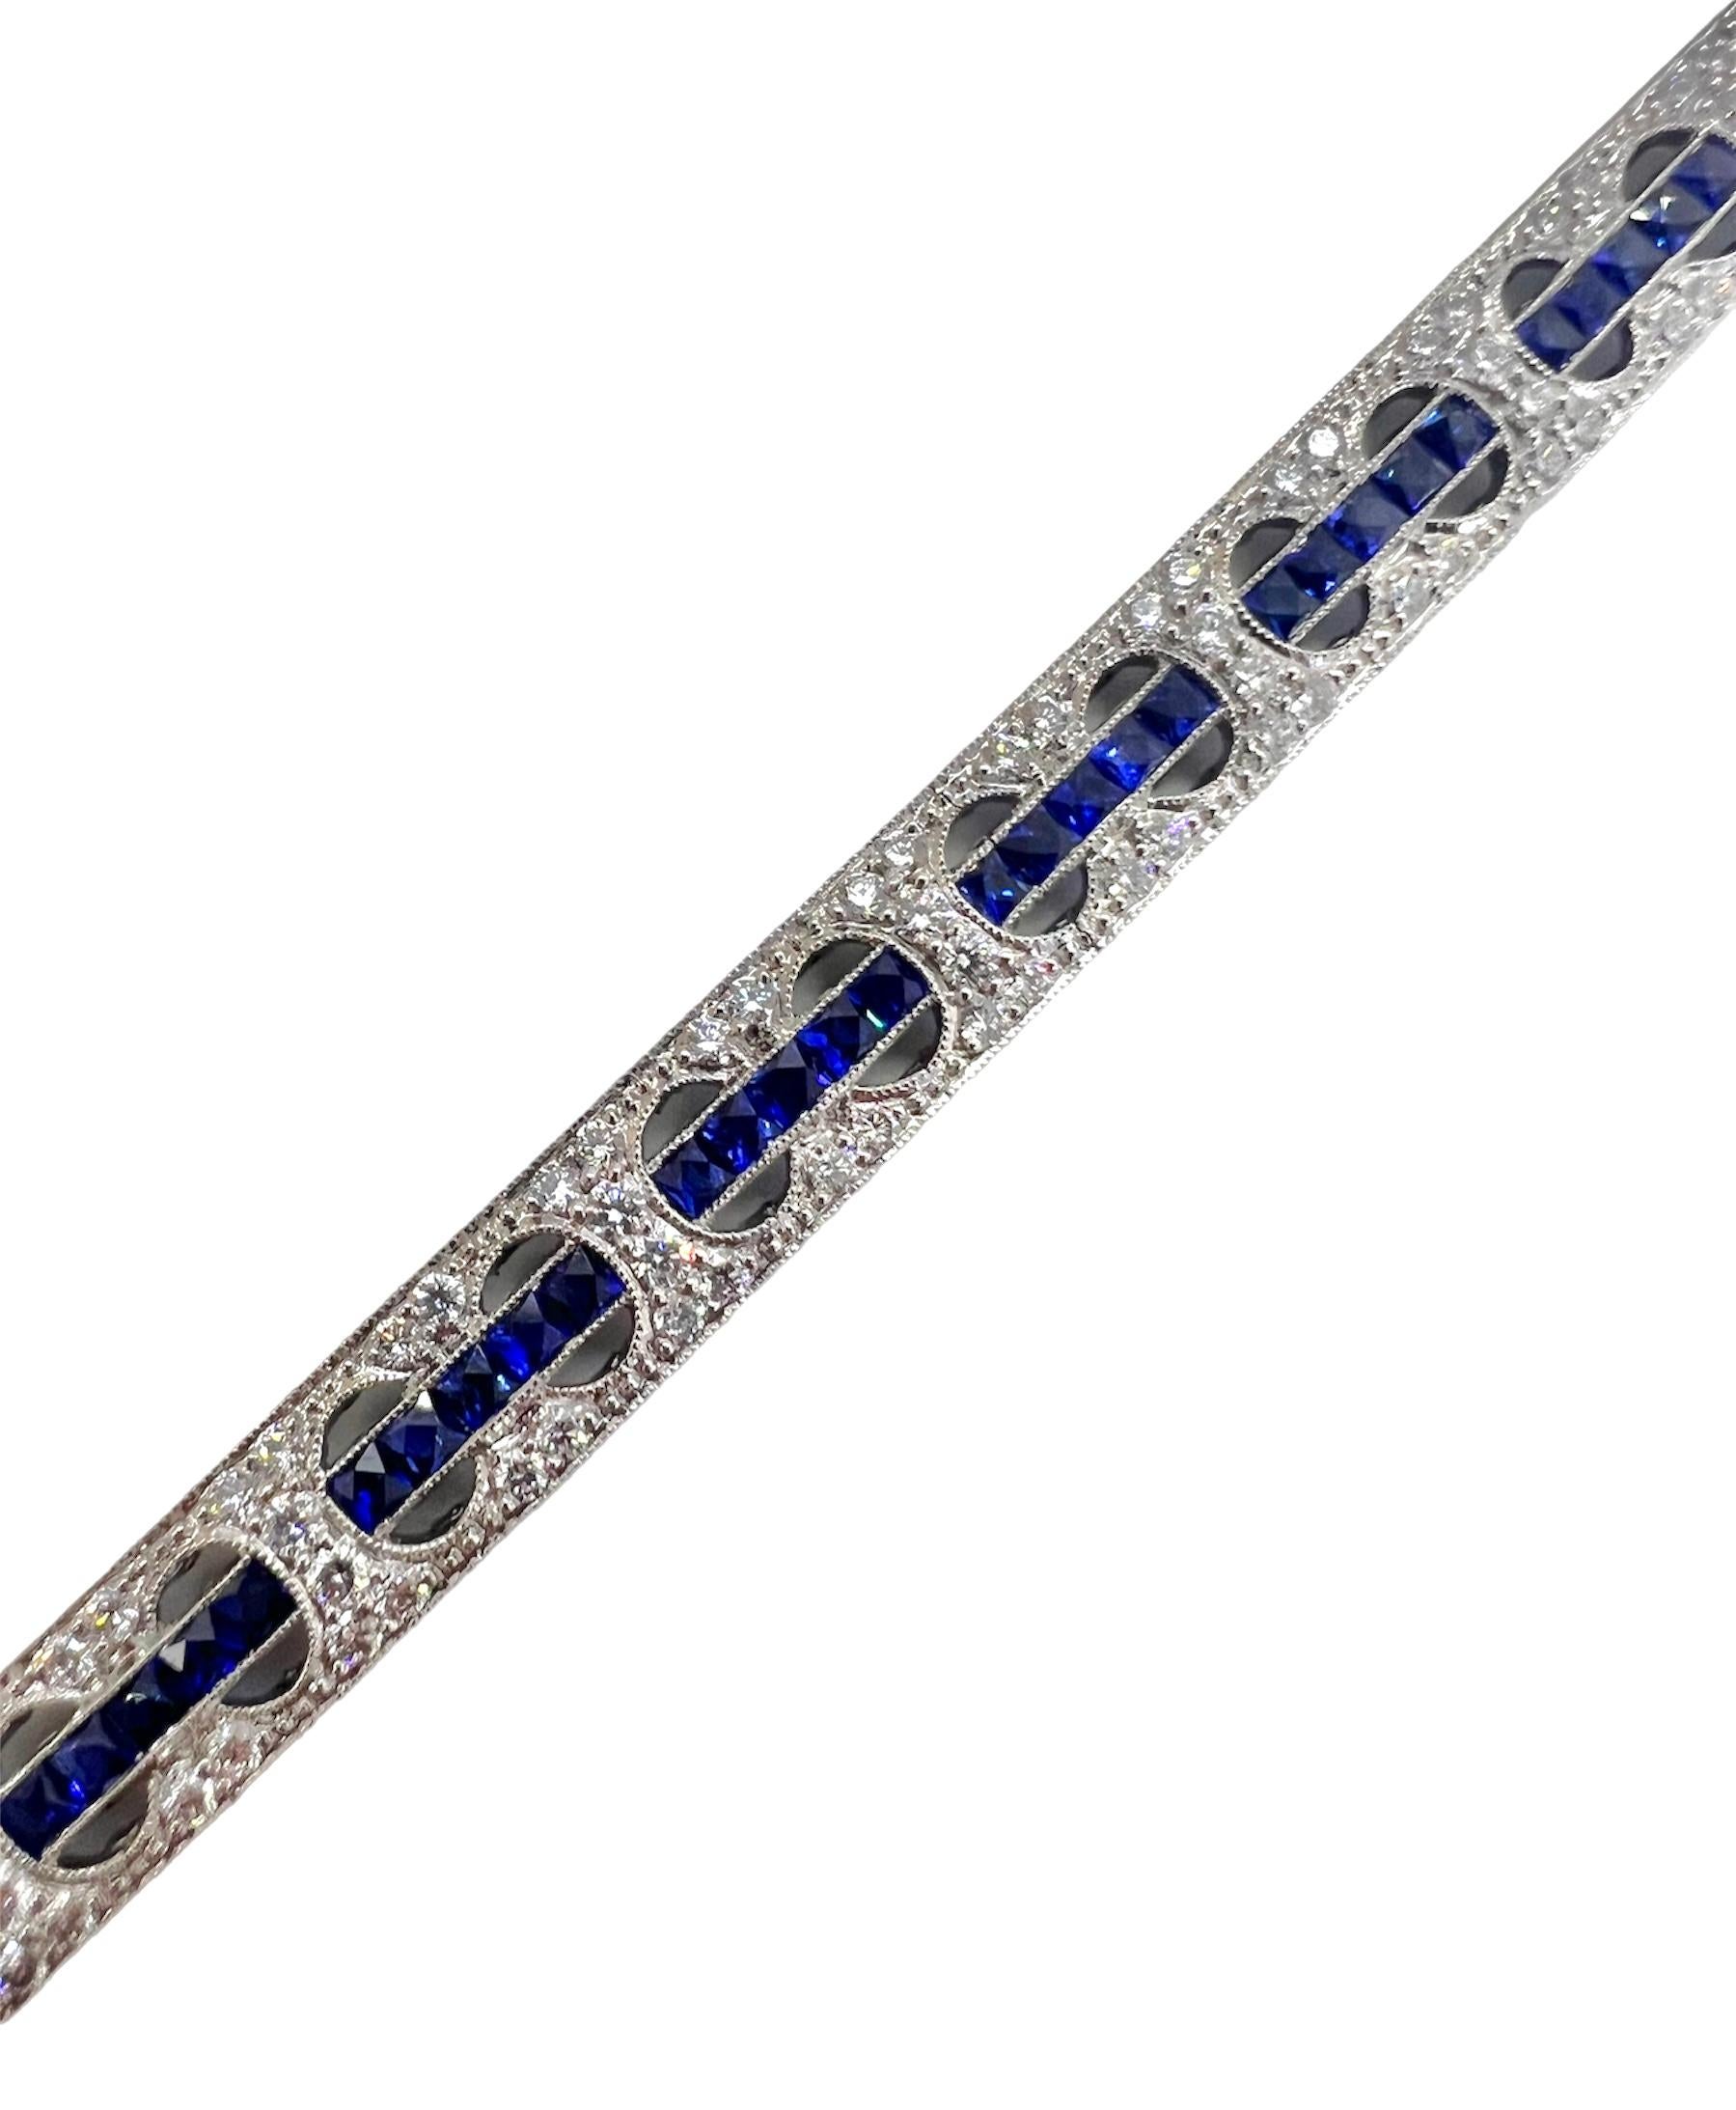 Sophia D. Von Art Deco inspiriertes Armband mit 2,19 Karat Diamant und 5,60 Karat blauem Saphir in Platinfassung. 

Sophia D von Joseph Dardashti LTD ist seit 35 Jahren weltweit bekannt und lässt sich vom klassischen Art-Déco-Design inspirieren, das